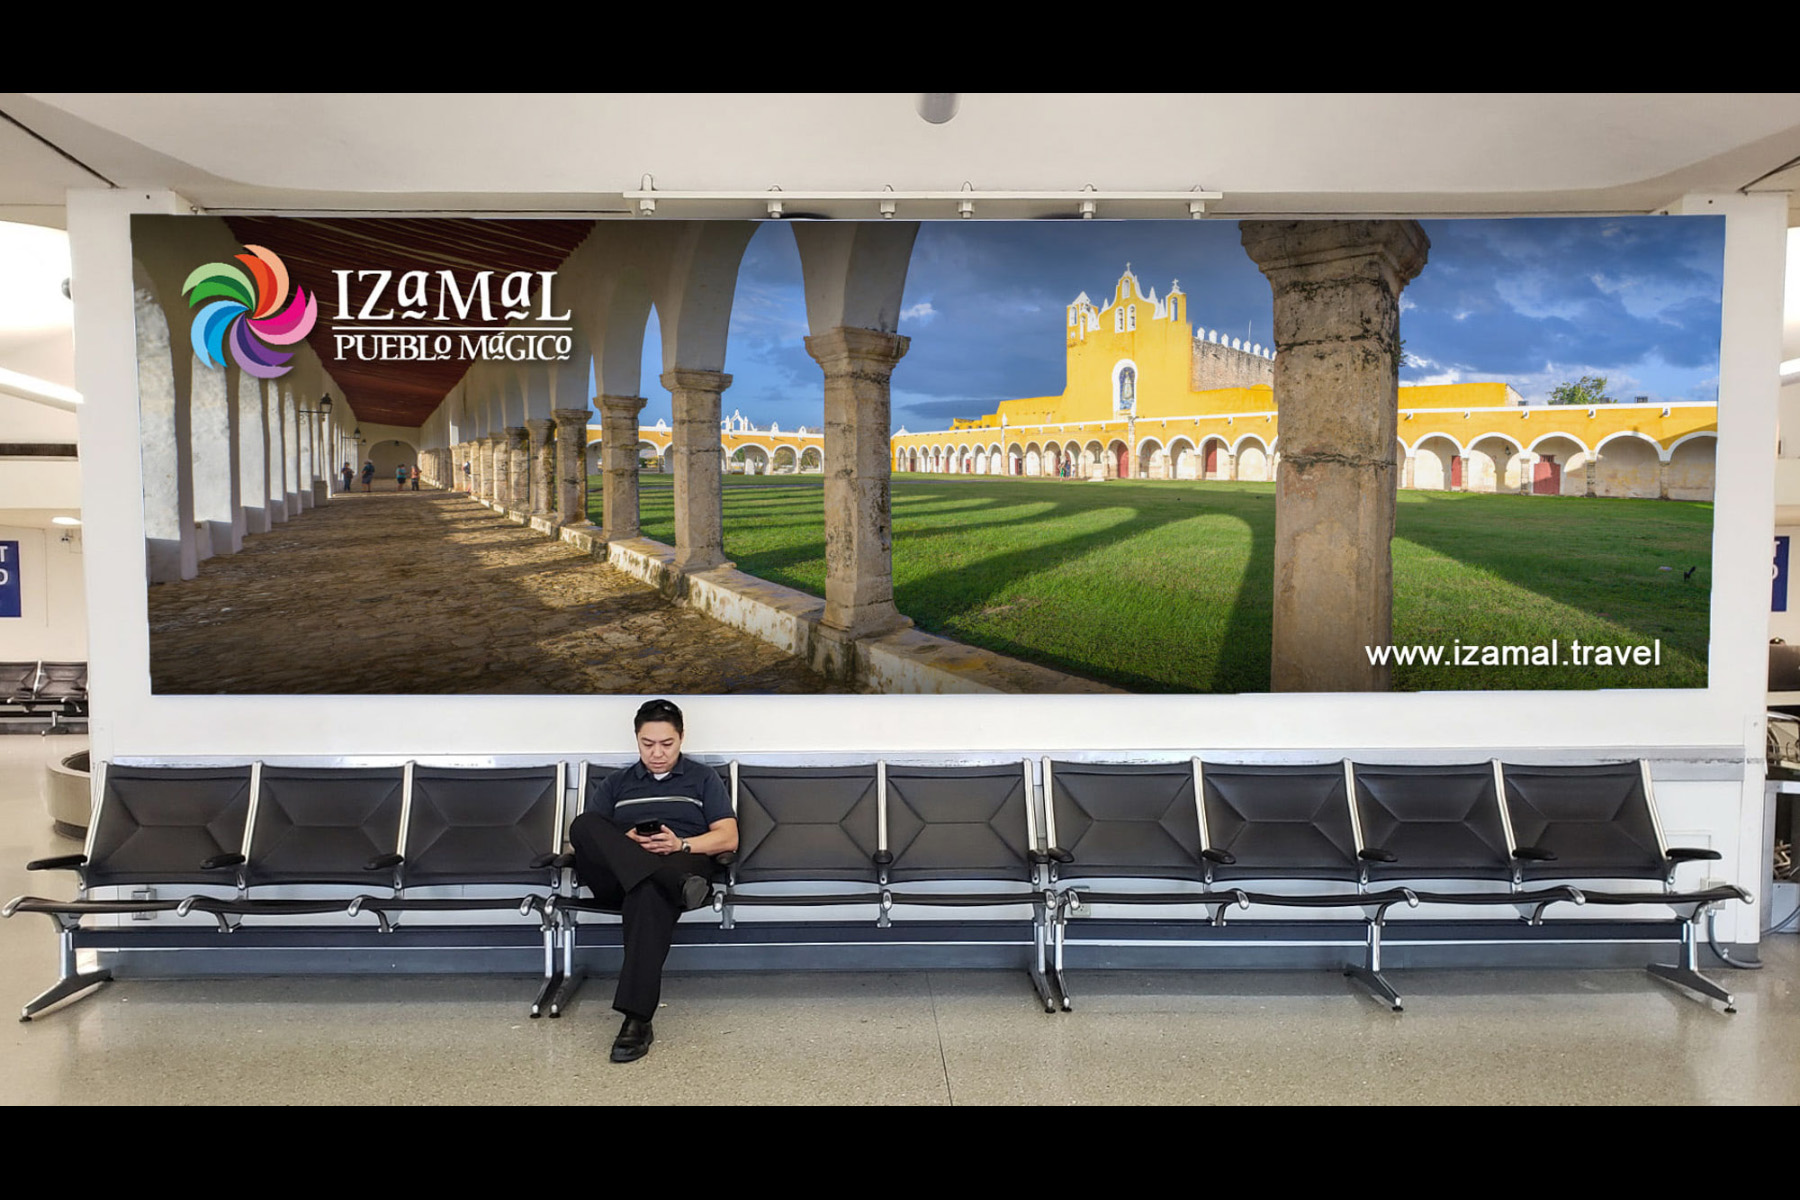 Montaje en banner aeroportuario de fotografía panorámica de San Antonio de Padua en Izamal